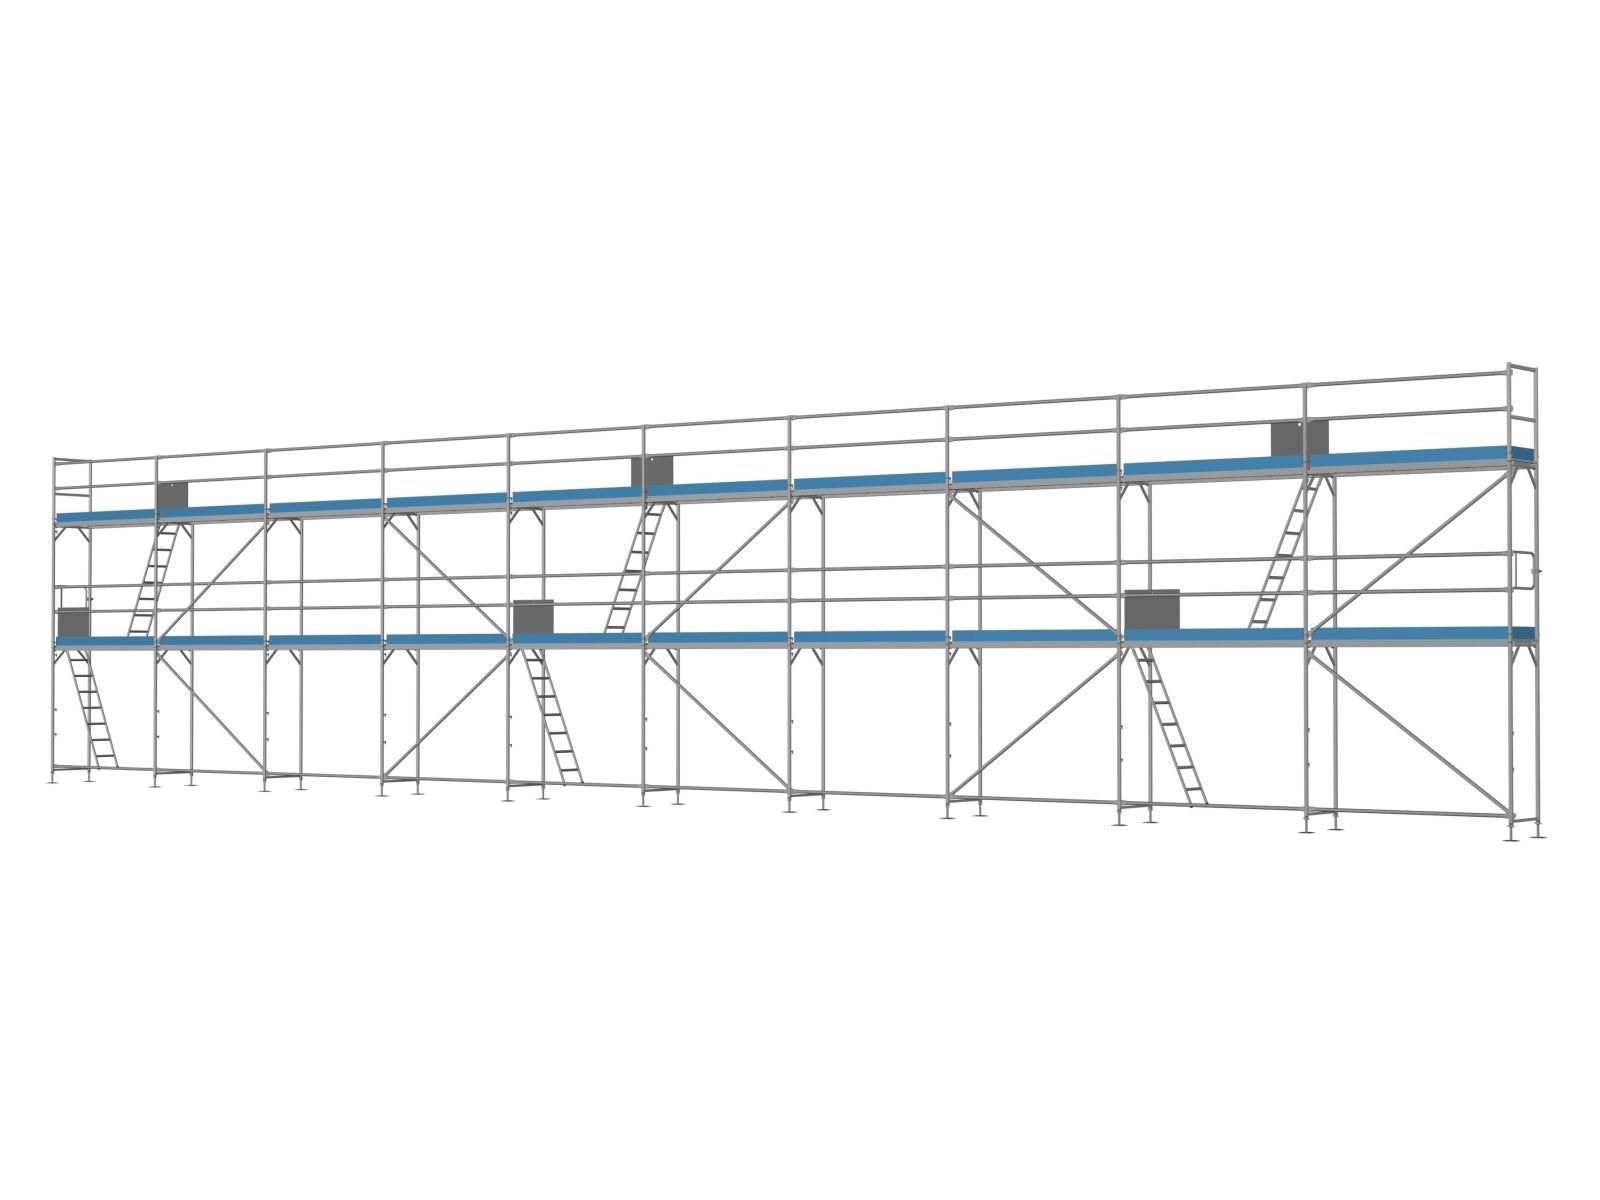 Stahl Traufseitengerüst 150 qm - 2,5 m Felder - 25 m lang - 6 m Arbeitshöhe - Komplettpaket